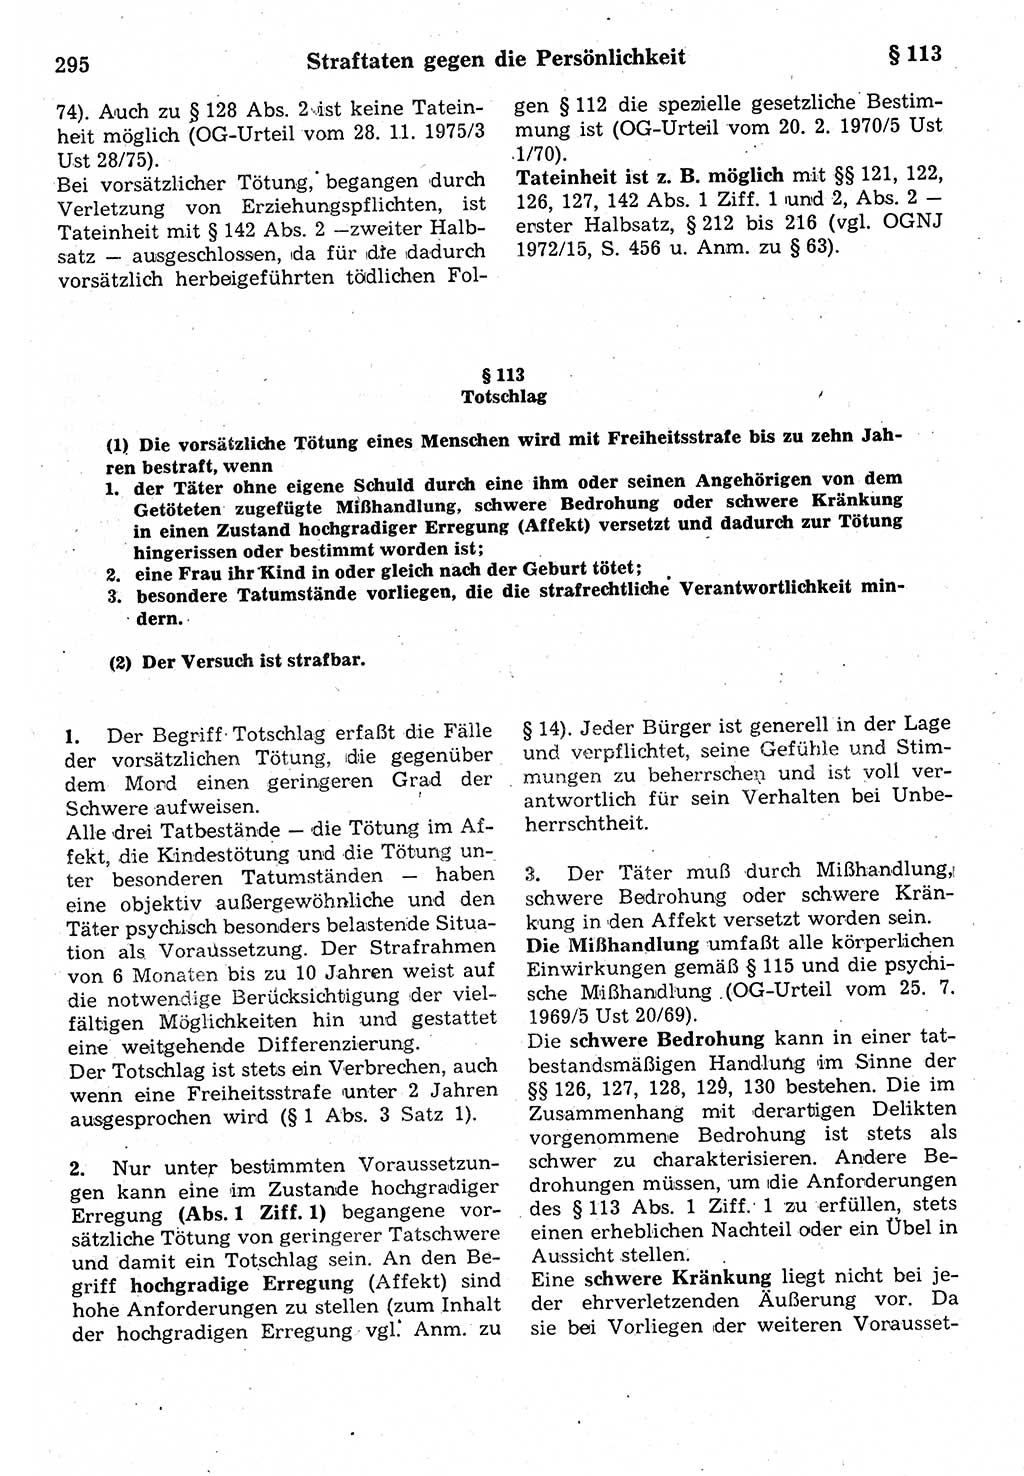 Strafrecht der Deutschen Demokratischen Republik (DDR), Kommentar zum Strafgesetzbuch (StGB) 1987, Seite 295 (Strafr. DDR Komm. StGB 1987, S. 295)